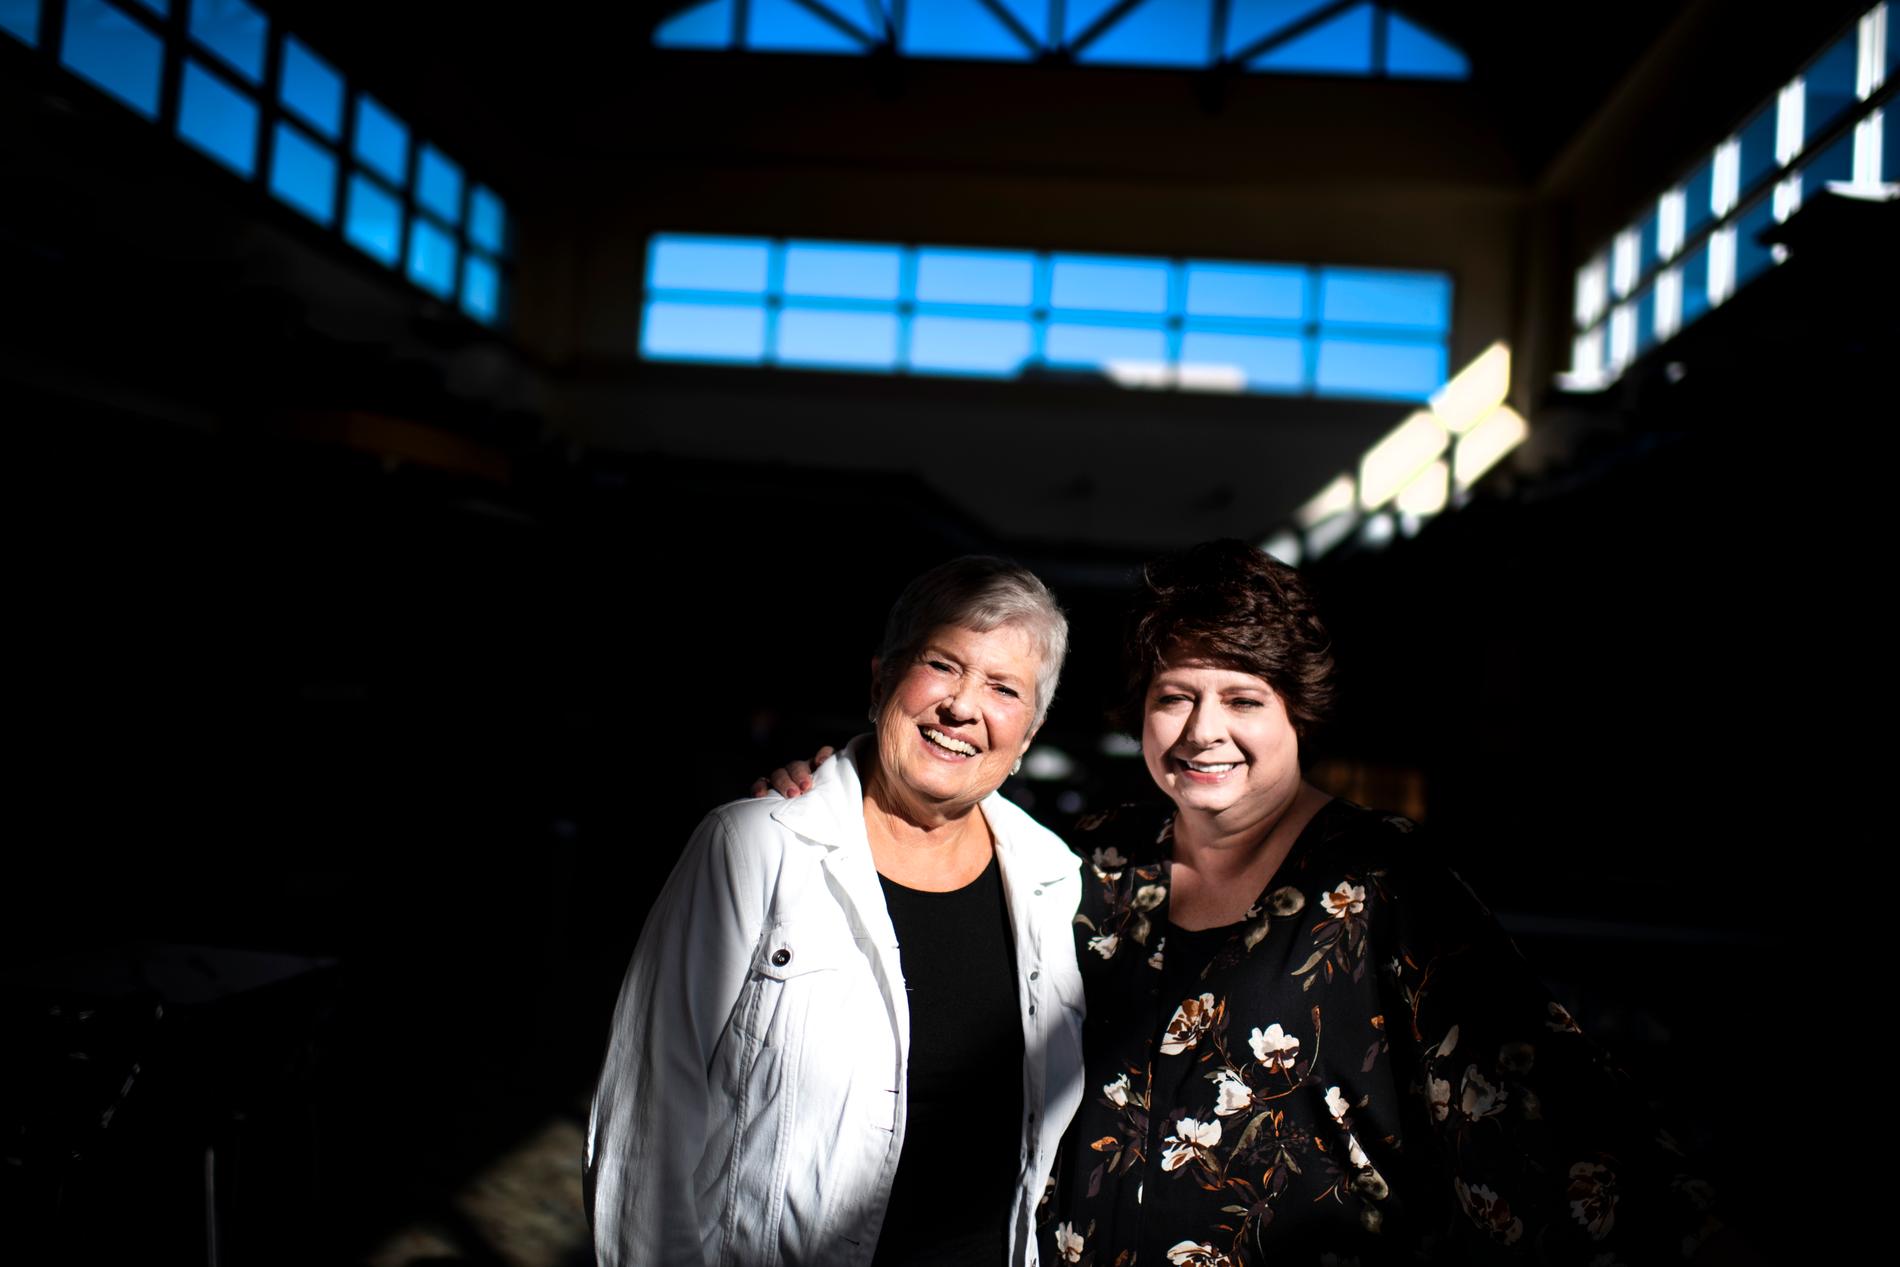 Republikanerna Barbara Burkard och Lori Viars som jobbar lokalt åt partiet i Ohio.